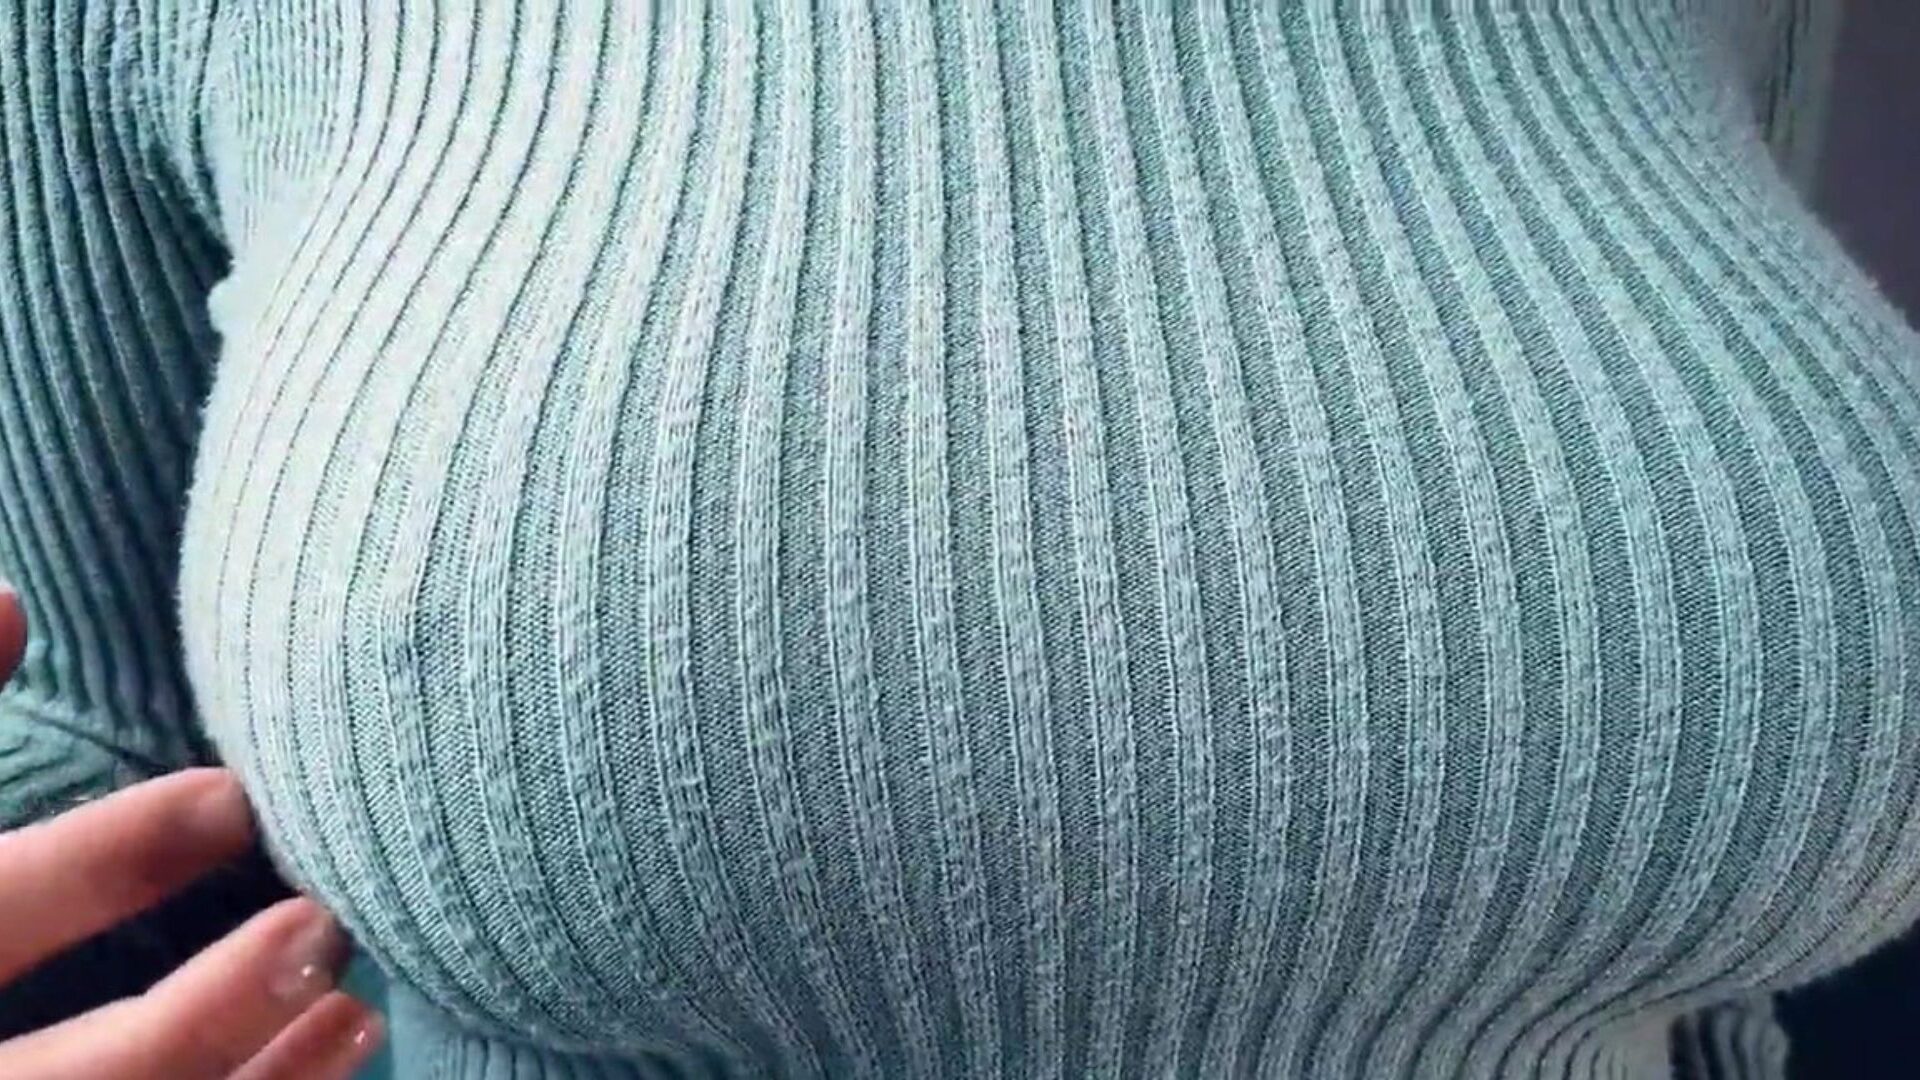 nagy mellek ugratás közben egy szűk kötött pulóverben ... nézni a nagy mellek ugratását egy szűk kötött pulóver epizódban a xhamsteren